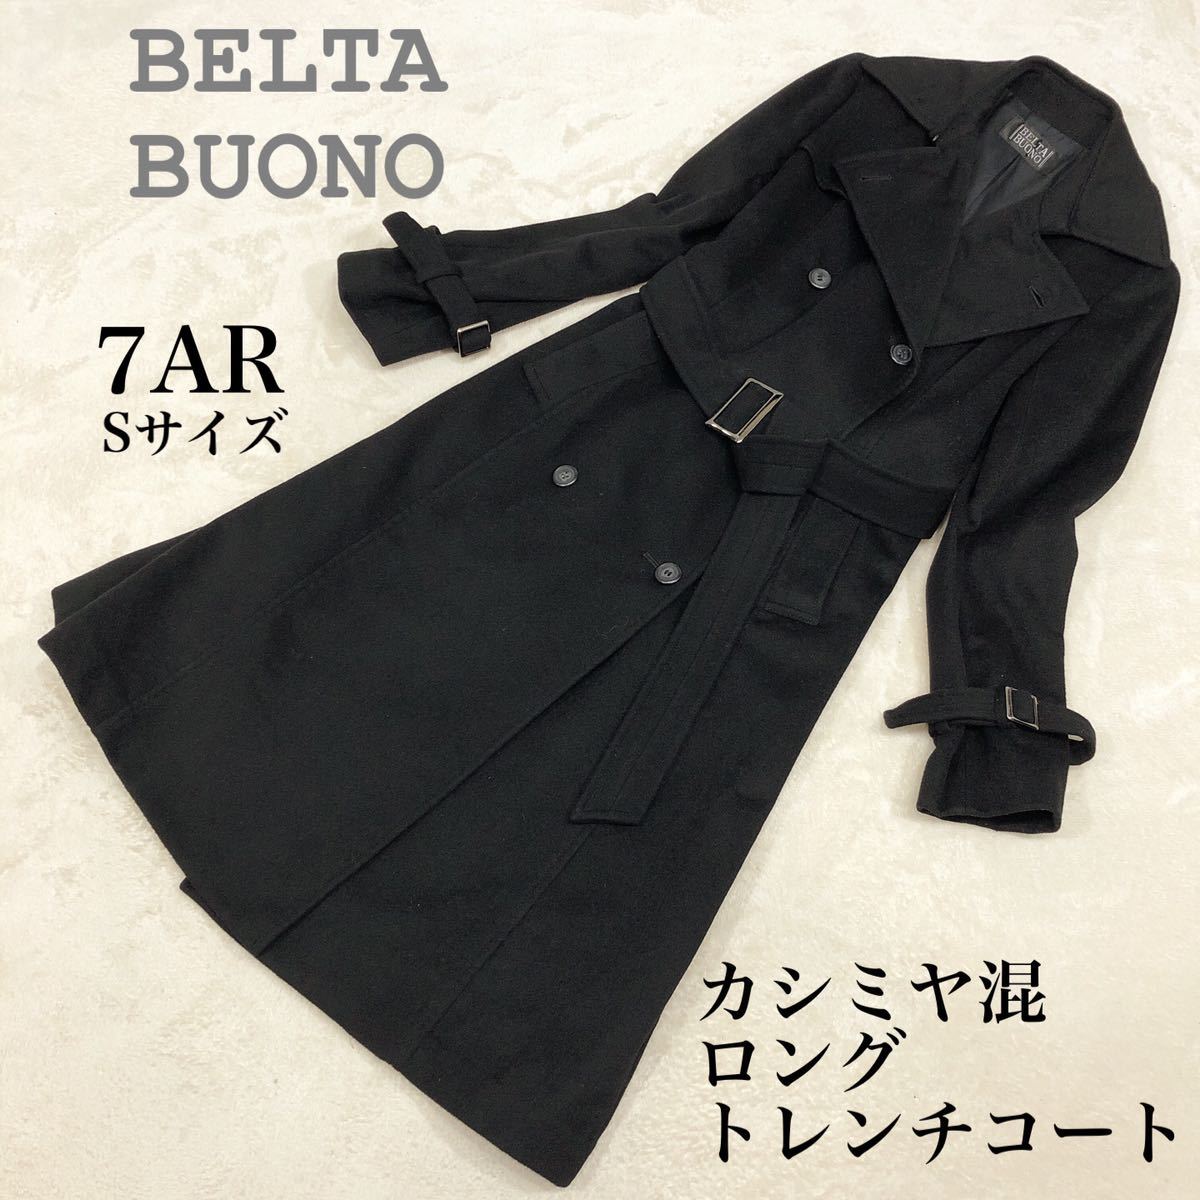 【BELTA BUONO】カシミヤコート ロングコート ジャケット/アウター レディース 値引きする